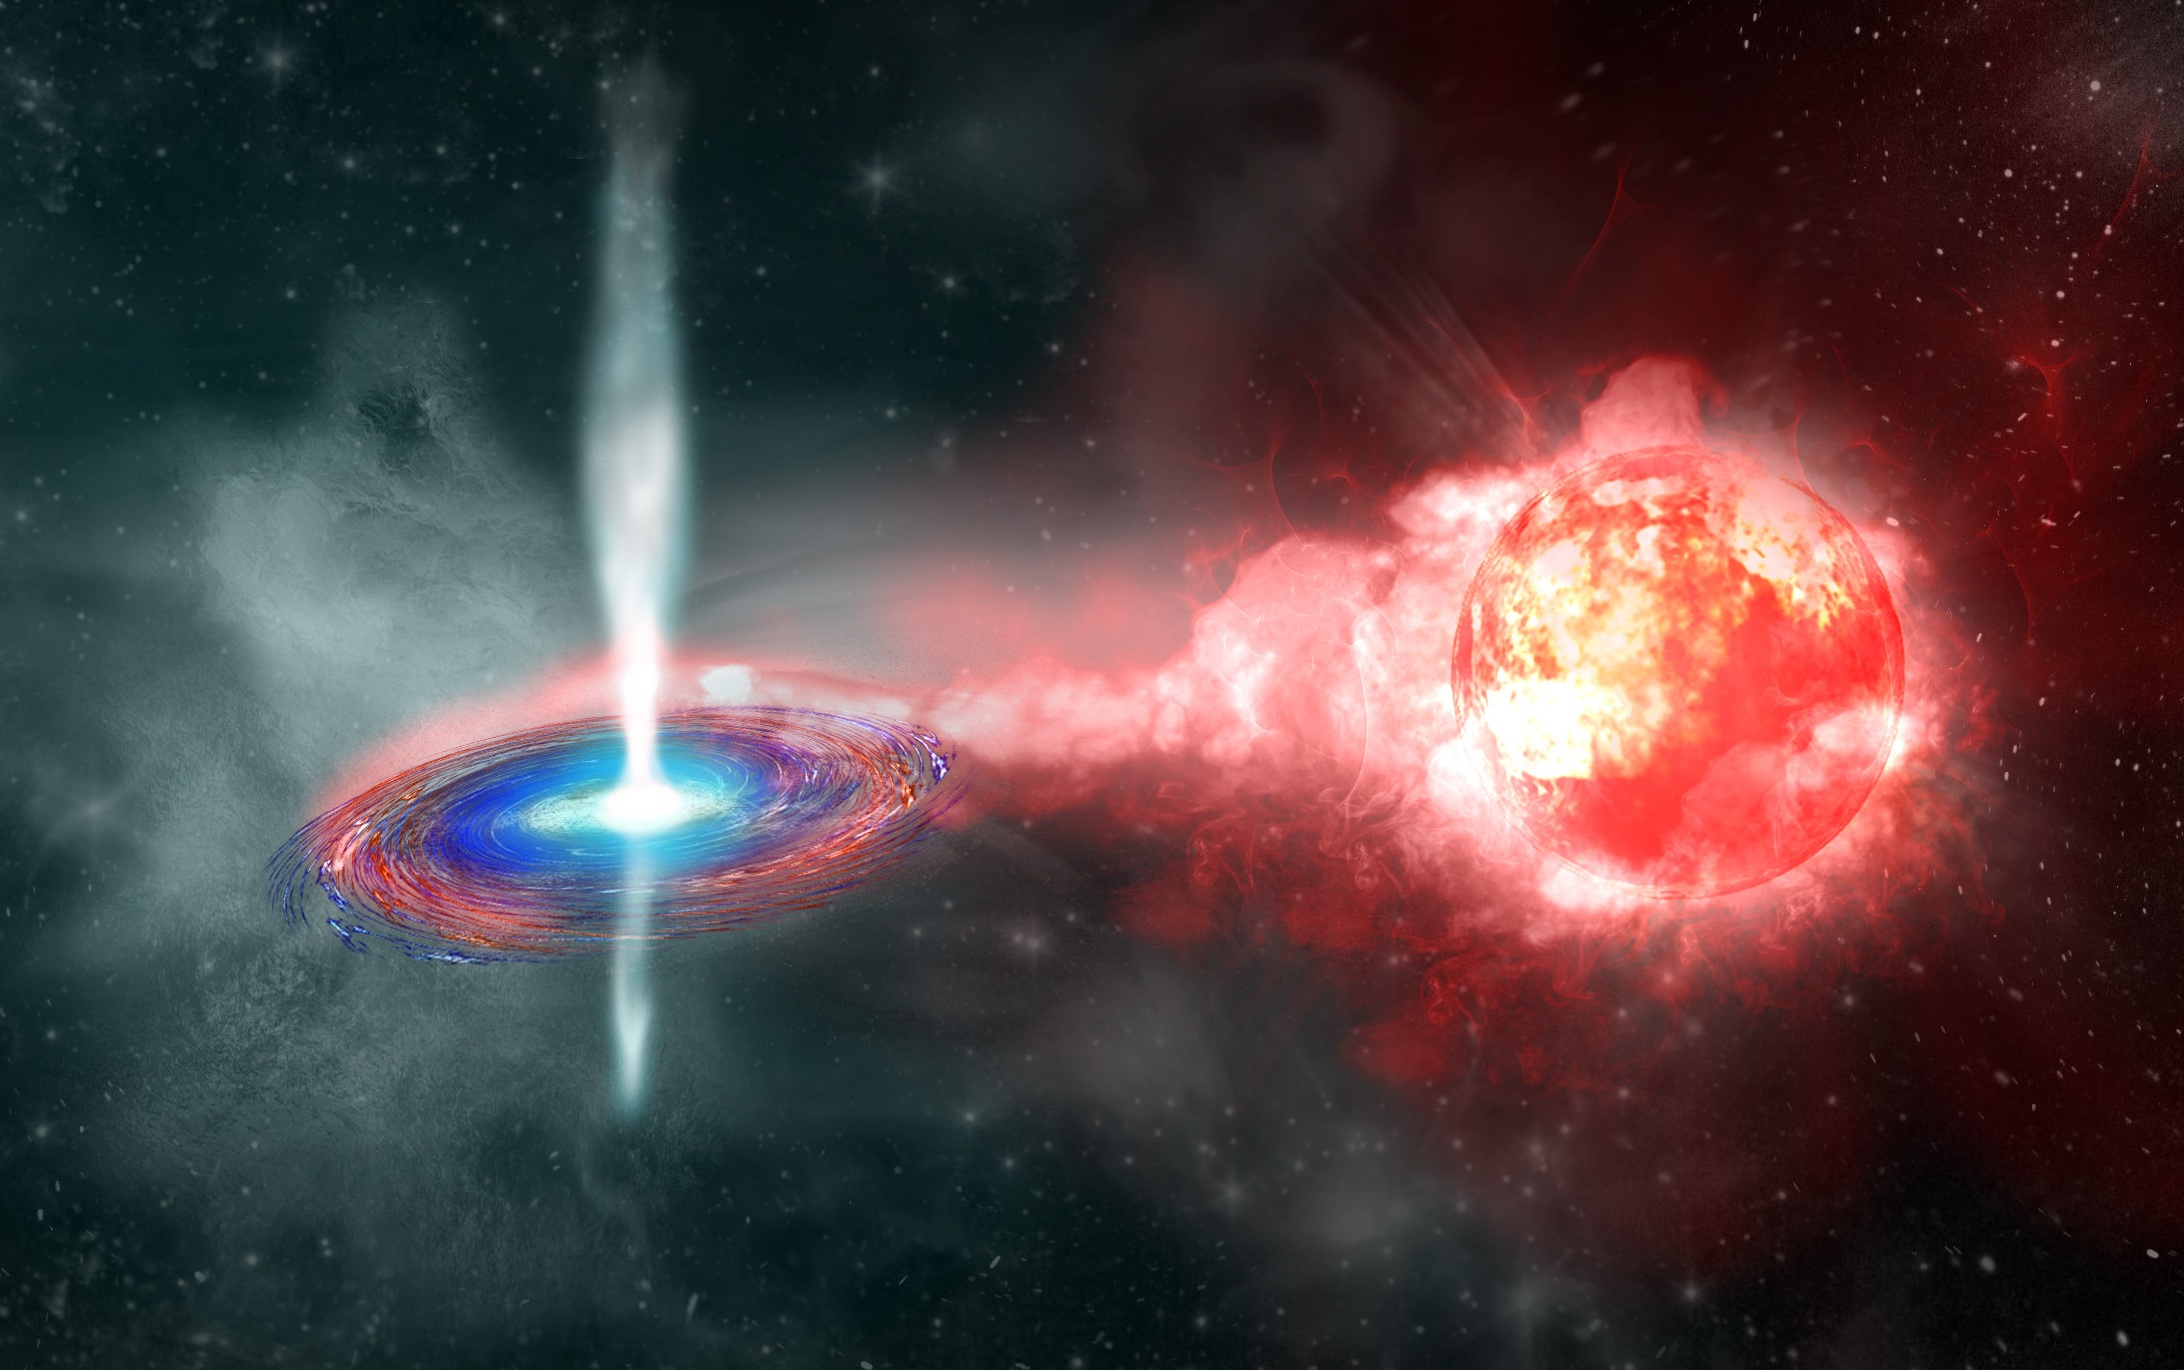 「宇宙の標準光源」として知られる、Ia型超新星の爆発直前の想像図。(Credit: Kavli IPMU)